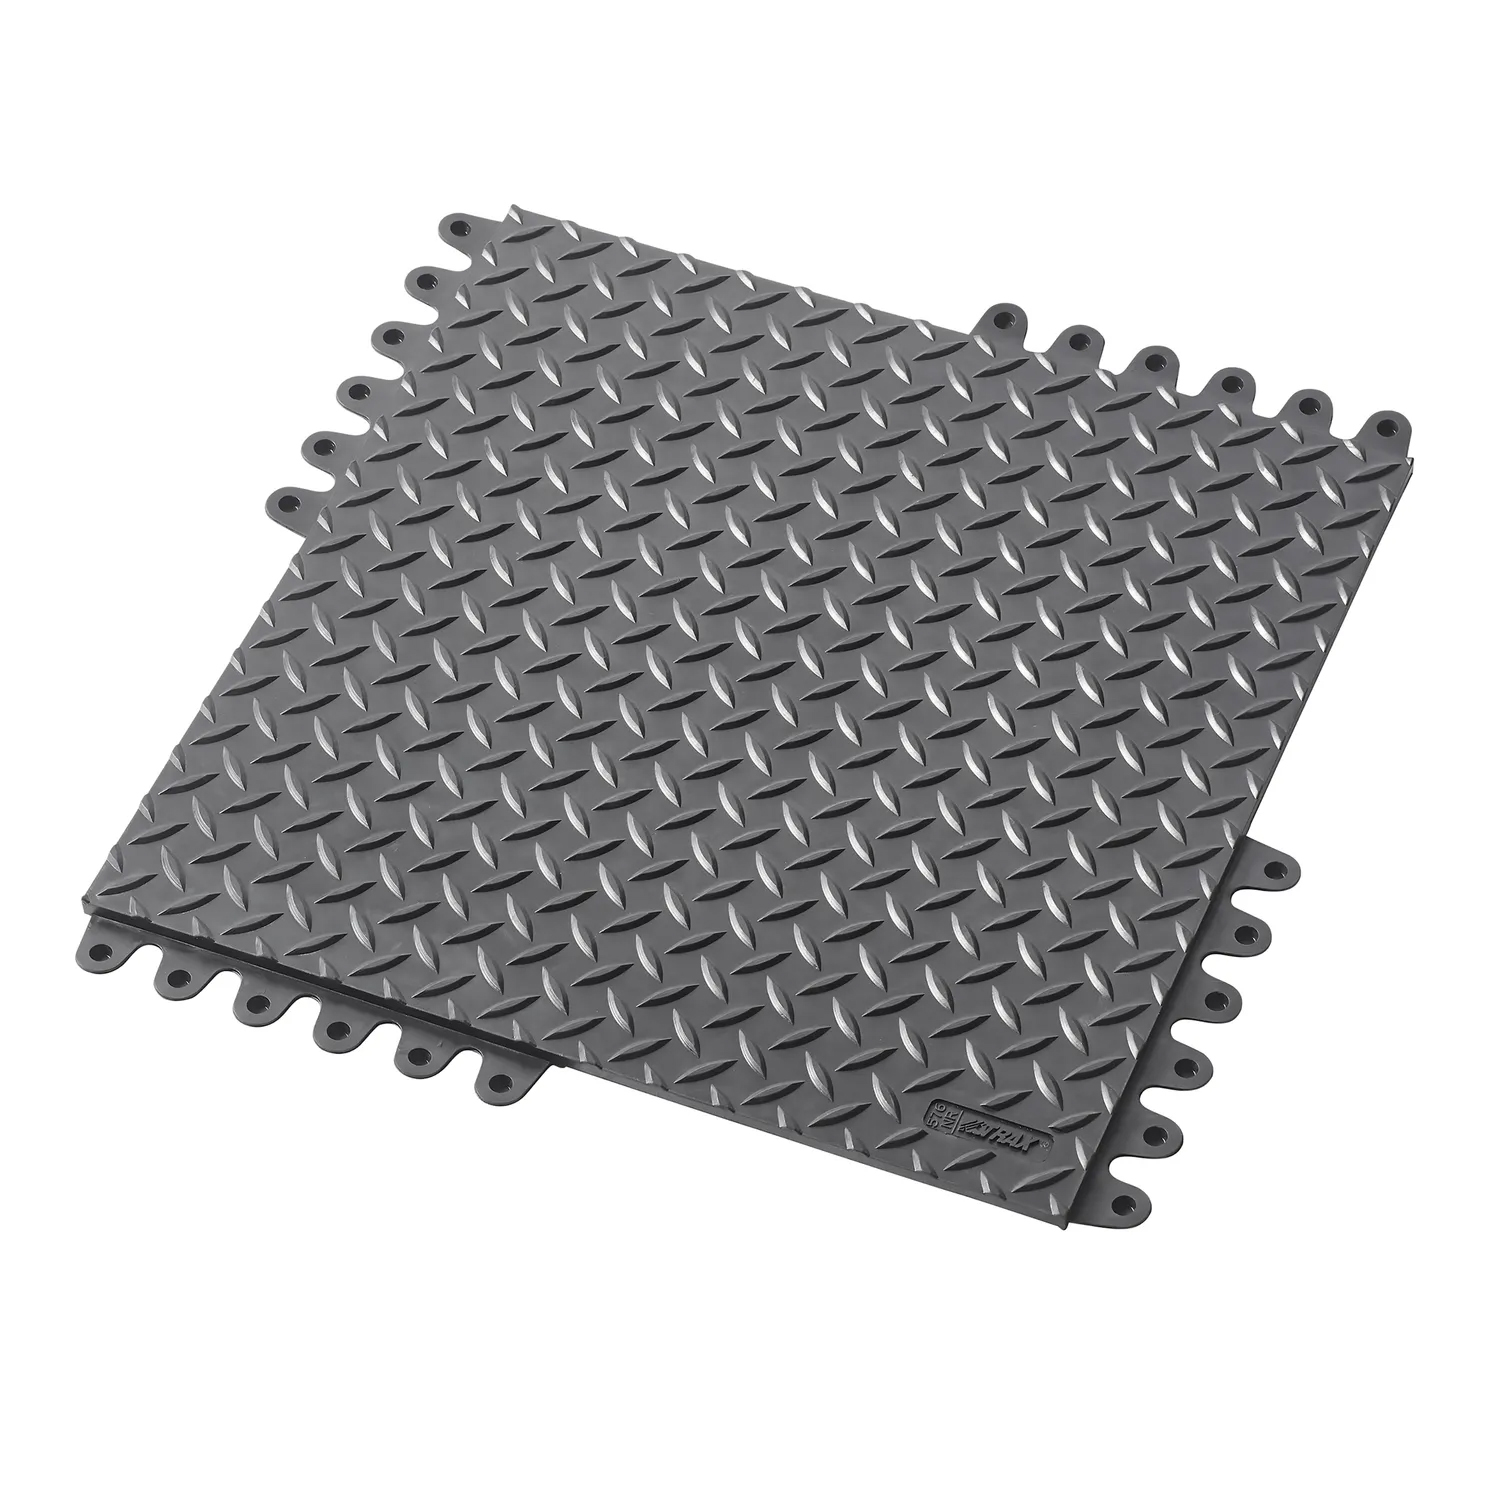 Stecksystem ESD-Bodenplatten DELTA FLEX | 45 x 45 cm | aus Natur- oder Nitrilgummi